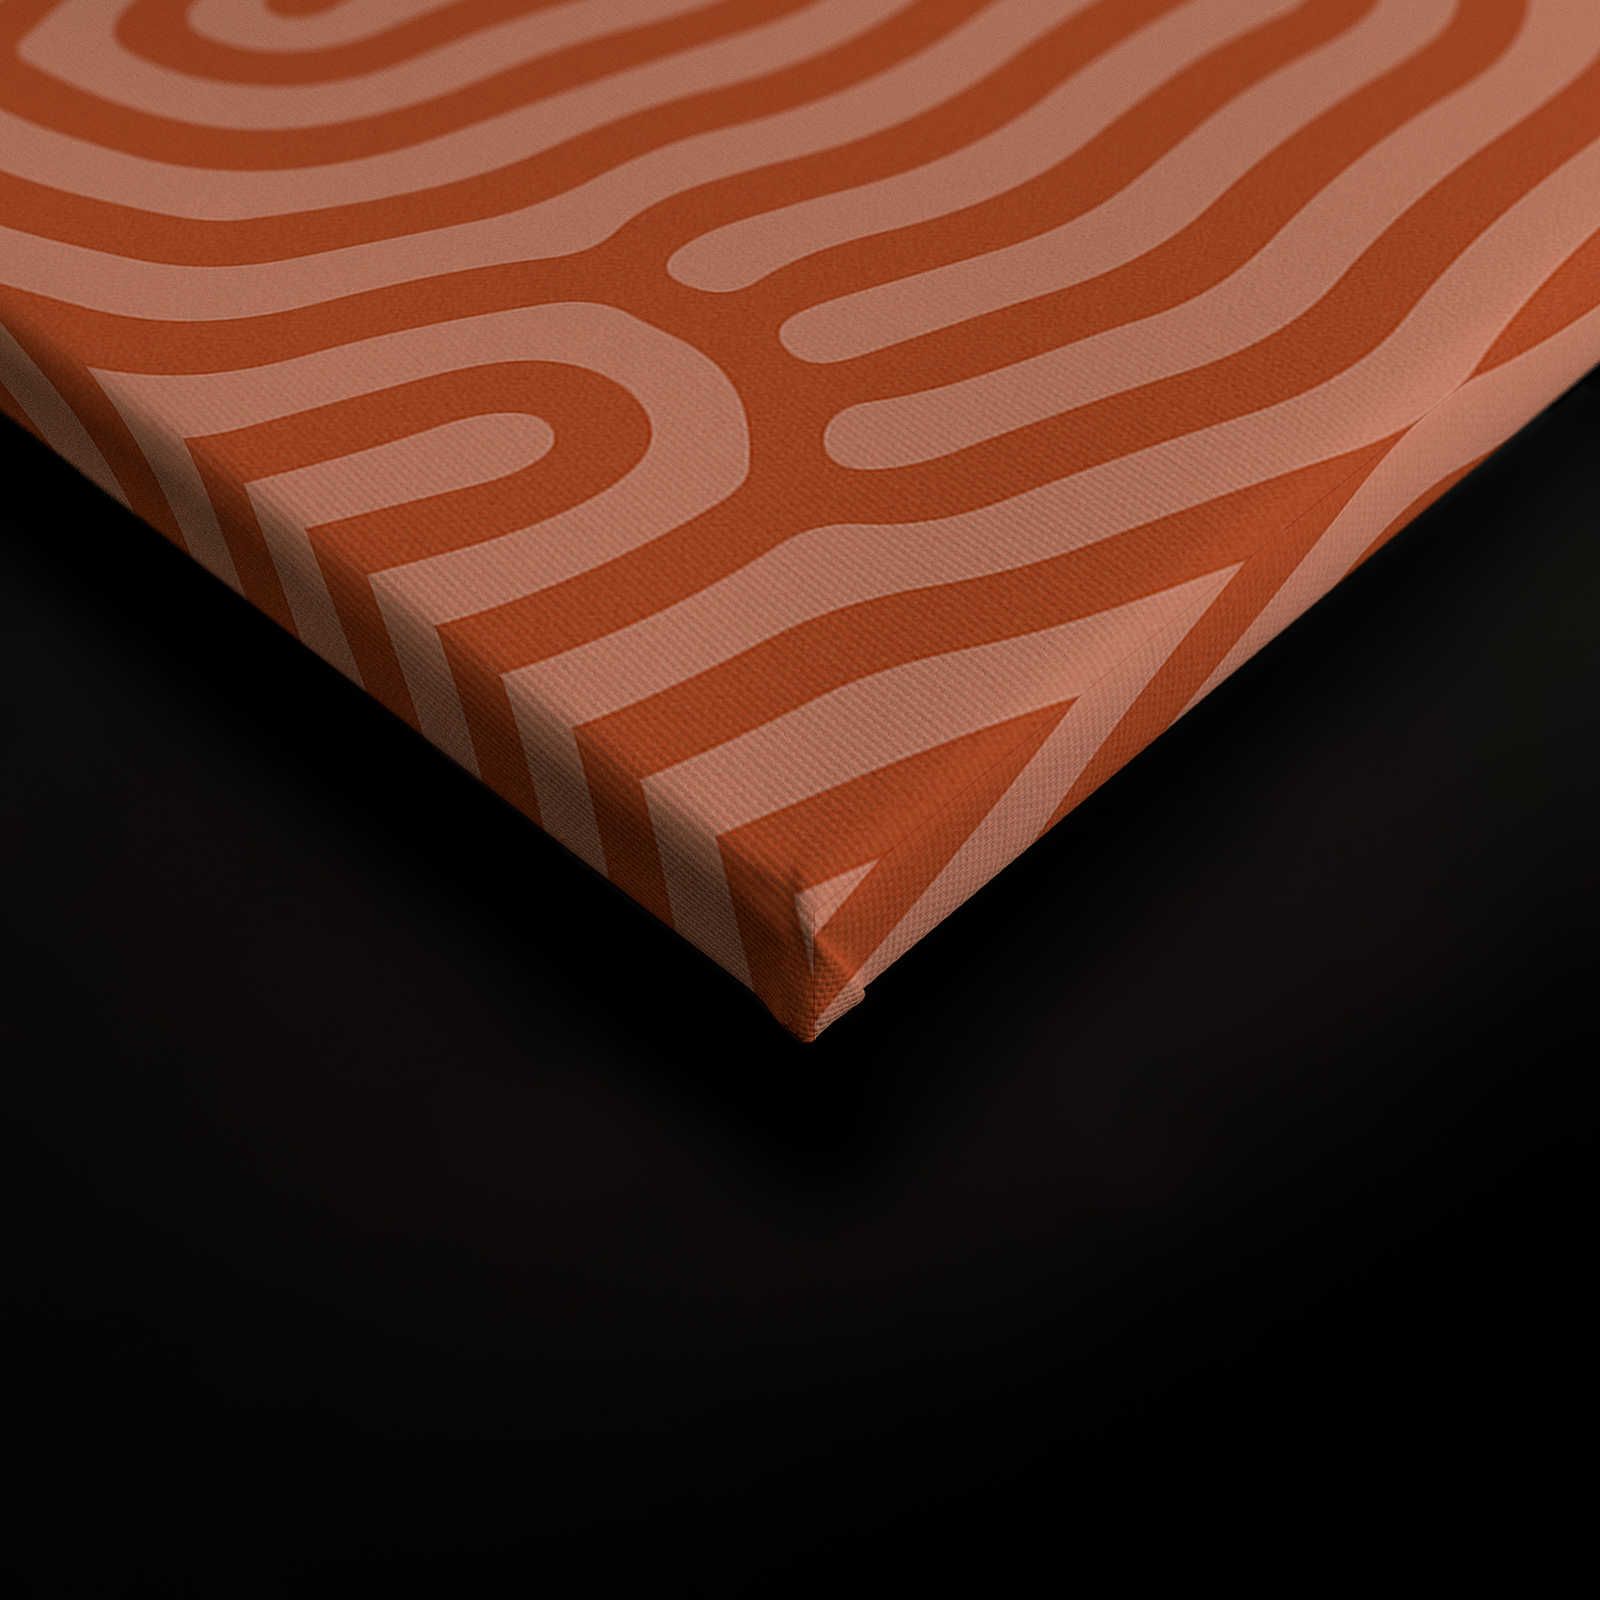             Sahel 3 - Quadro su tela rossa con motivo a linee organiche - 0,90 m x 0,60 m
        